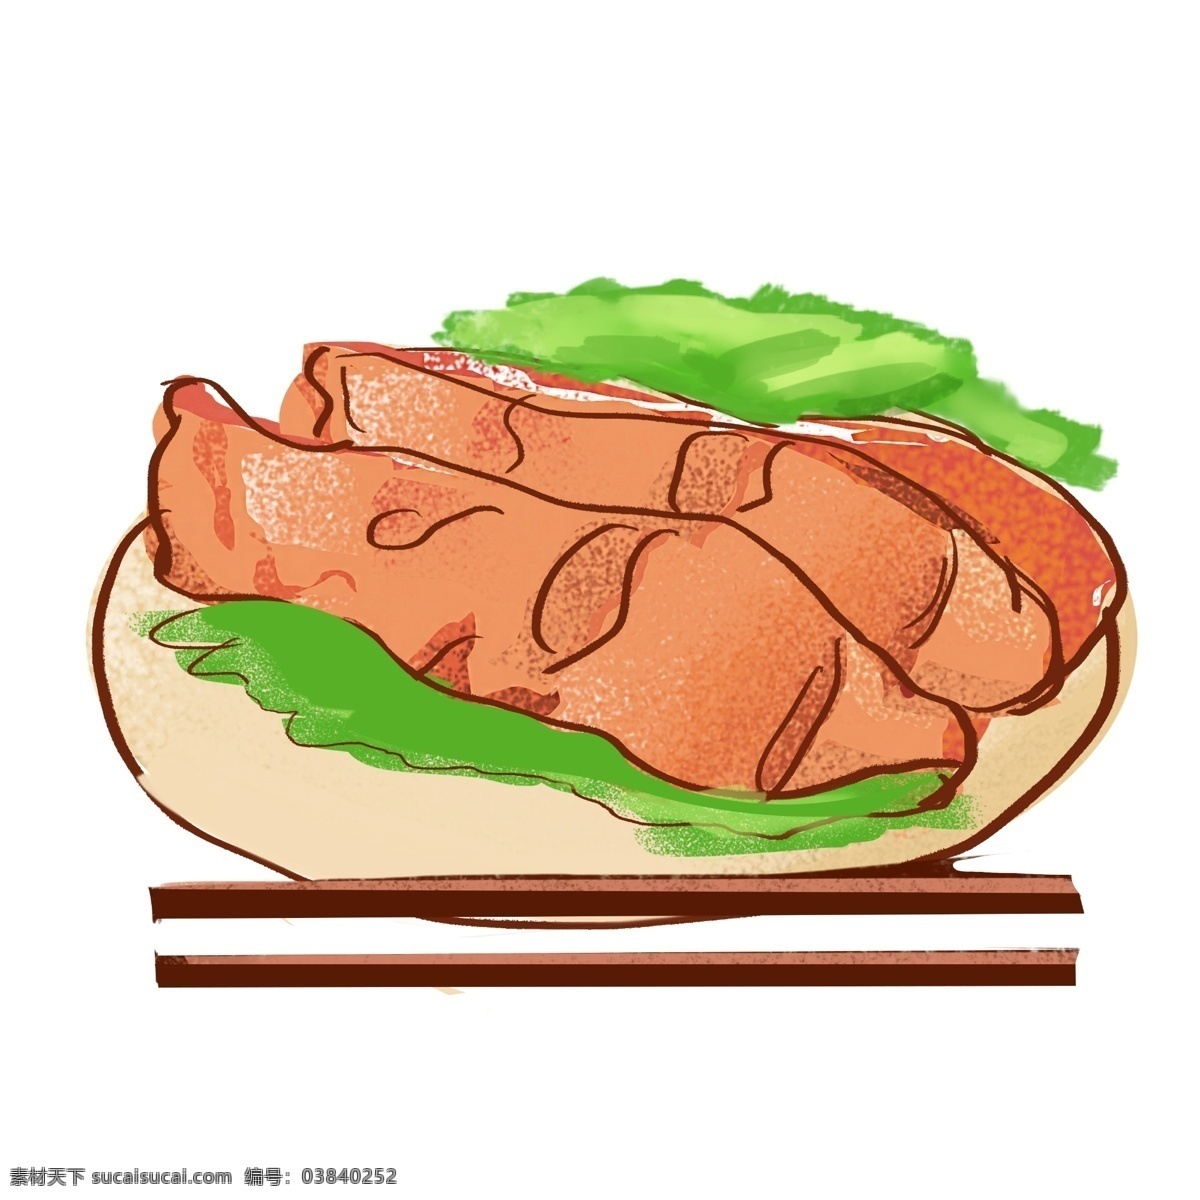 鸡腿 肉 美食 插画 美味的鸡腿肉 卡通插画 美食插画 食物 小吃 肉类 鸡腿肉插画 香香的鸡腿肉